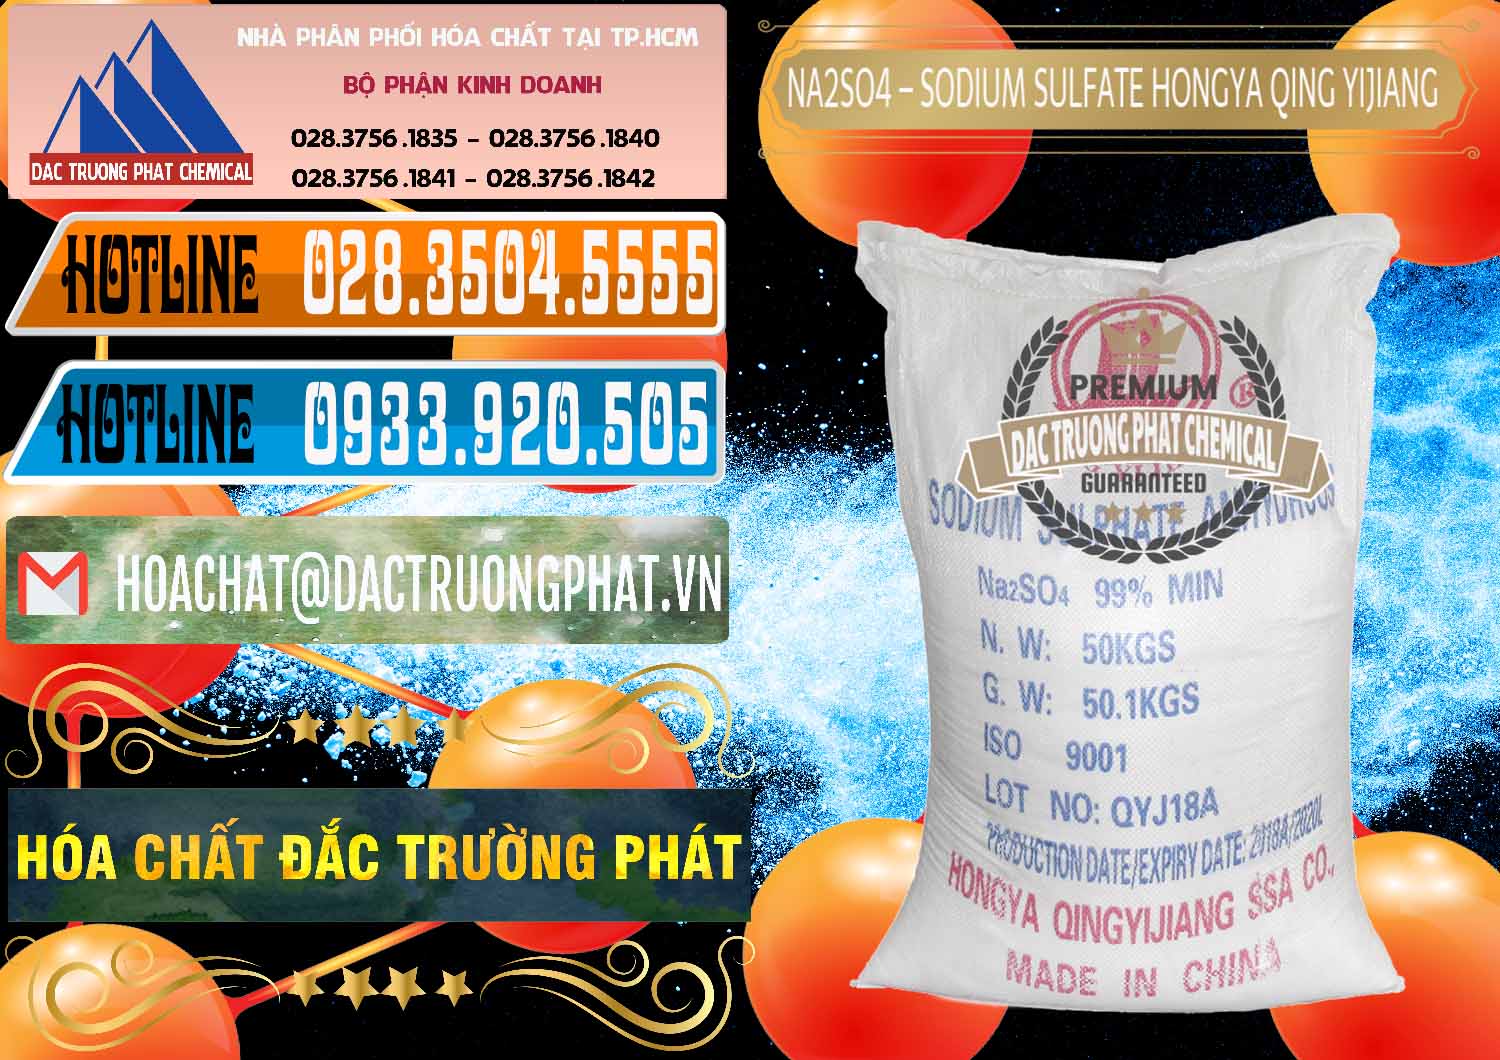 Công ty chuyên nhập khẩu - bán Sodium Sulphate - Muối Sunfat Na2SO4 Logo Cánh Bườm Hongya Qing Yi Trung Quốc China - 0098 - Công ty chuyên bán và cung cấp hóa chất tại TP.HCM - stmp.net